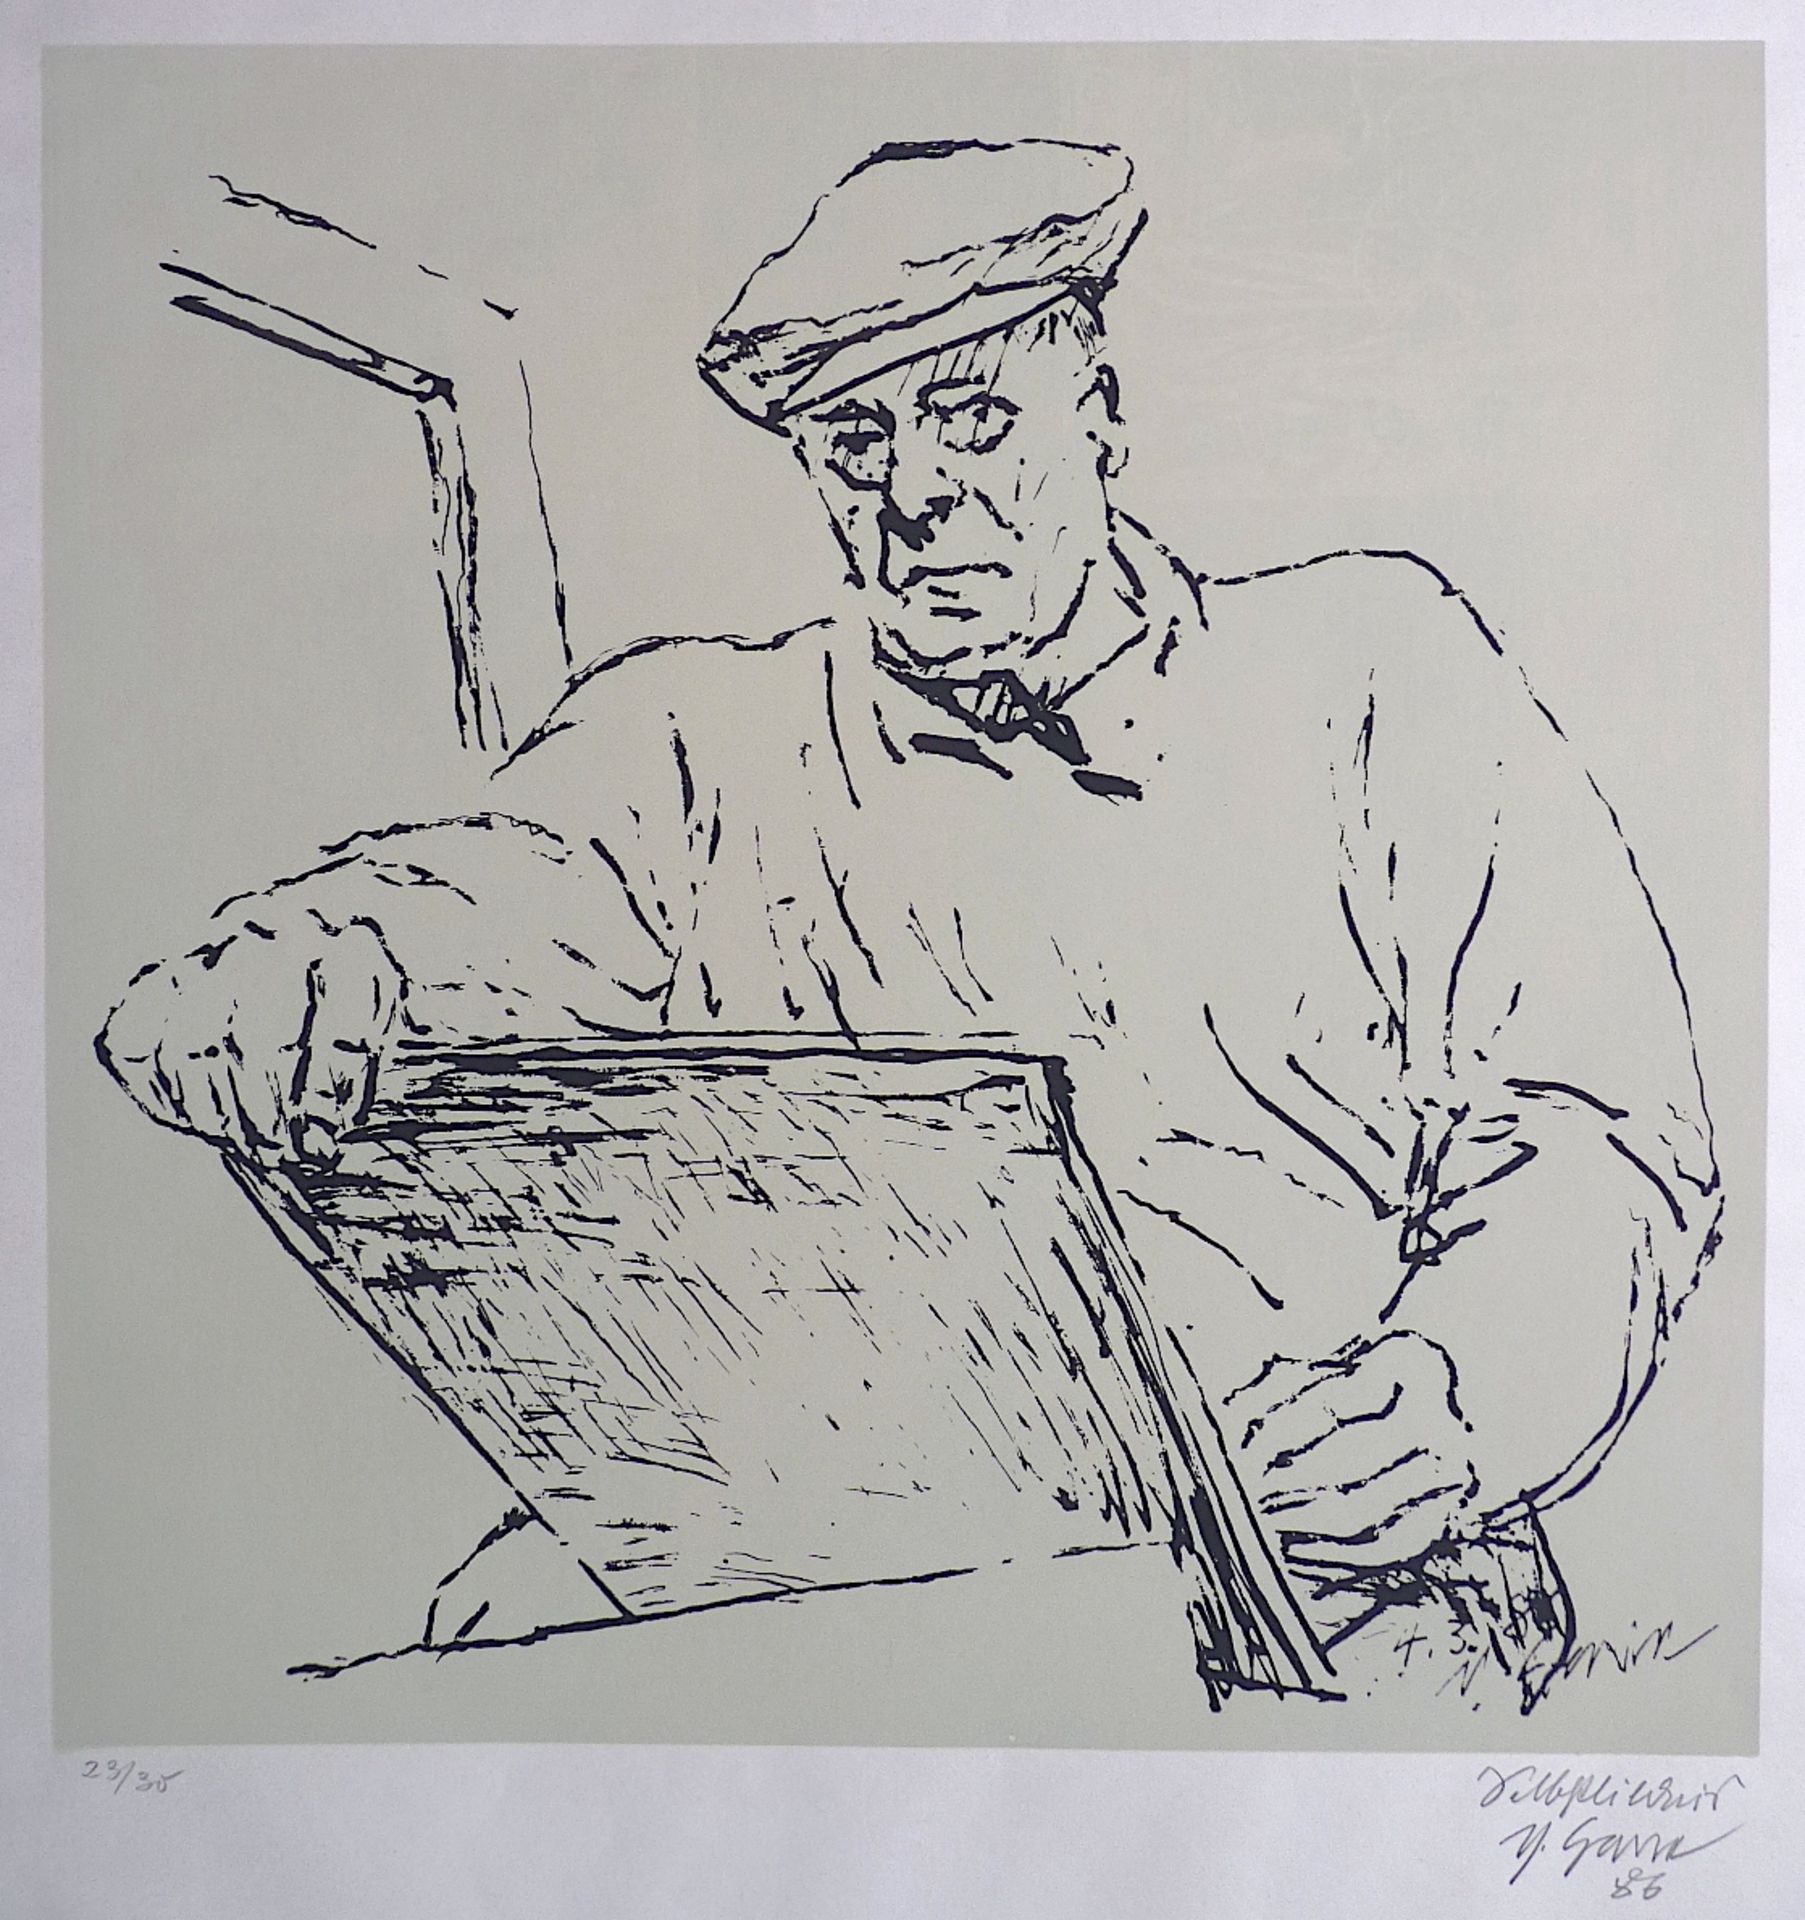 GARVE, THEO (Offenbach 1902-1987 Frankfurt/Main) "Selbstbildnis beim Zeichnen", 1986